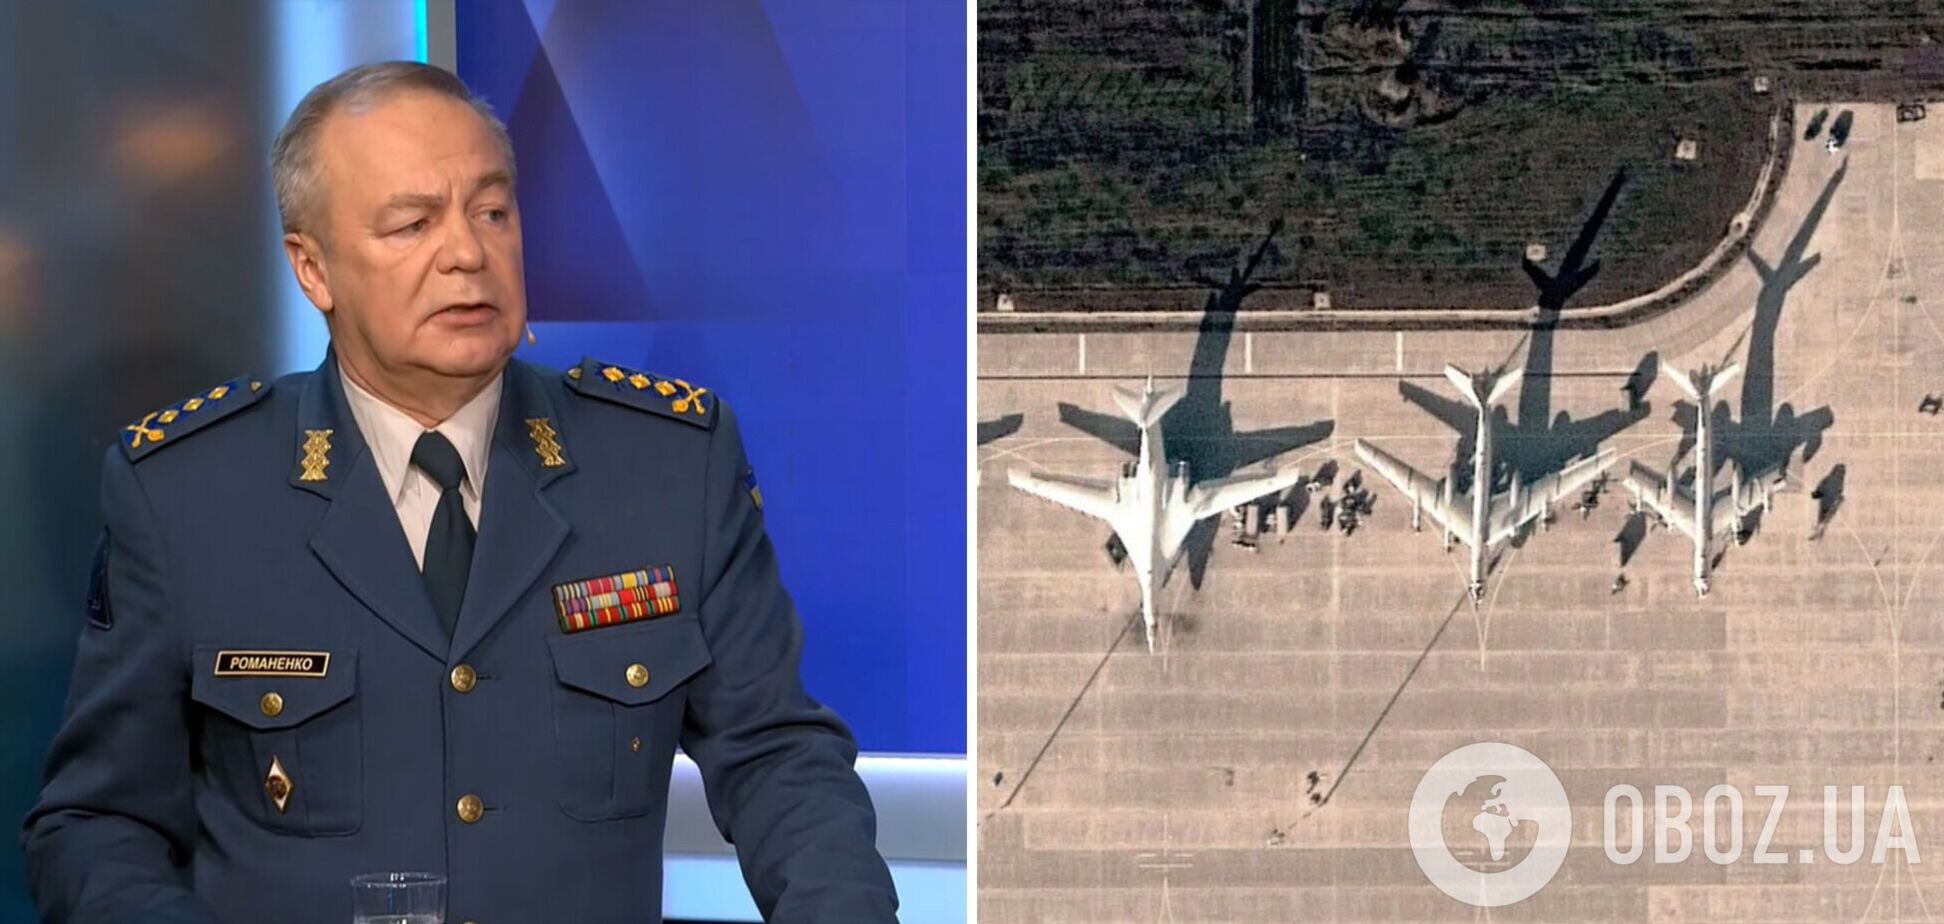 'Це абсолютно законні дії': генерал Романенко розповів про ефективність 'бавовни' на аеродромах РФ і підтримку союзників